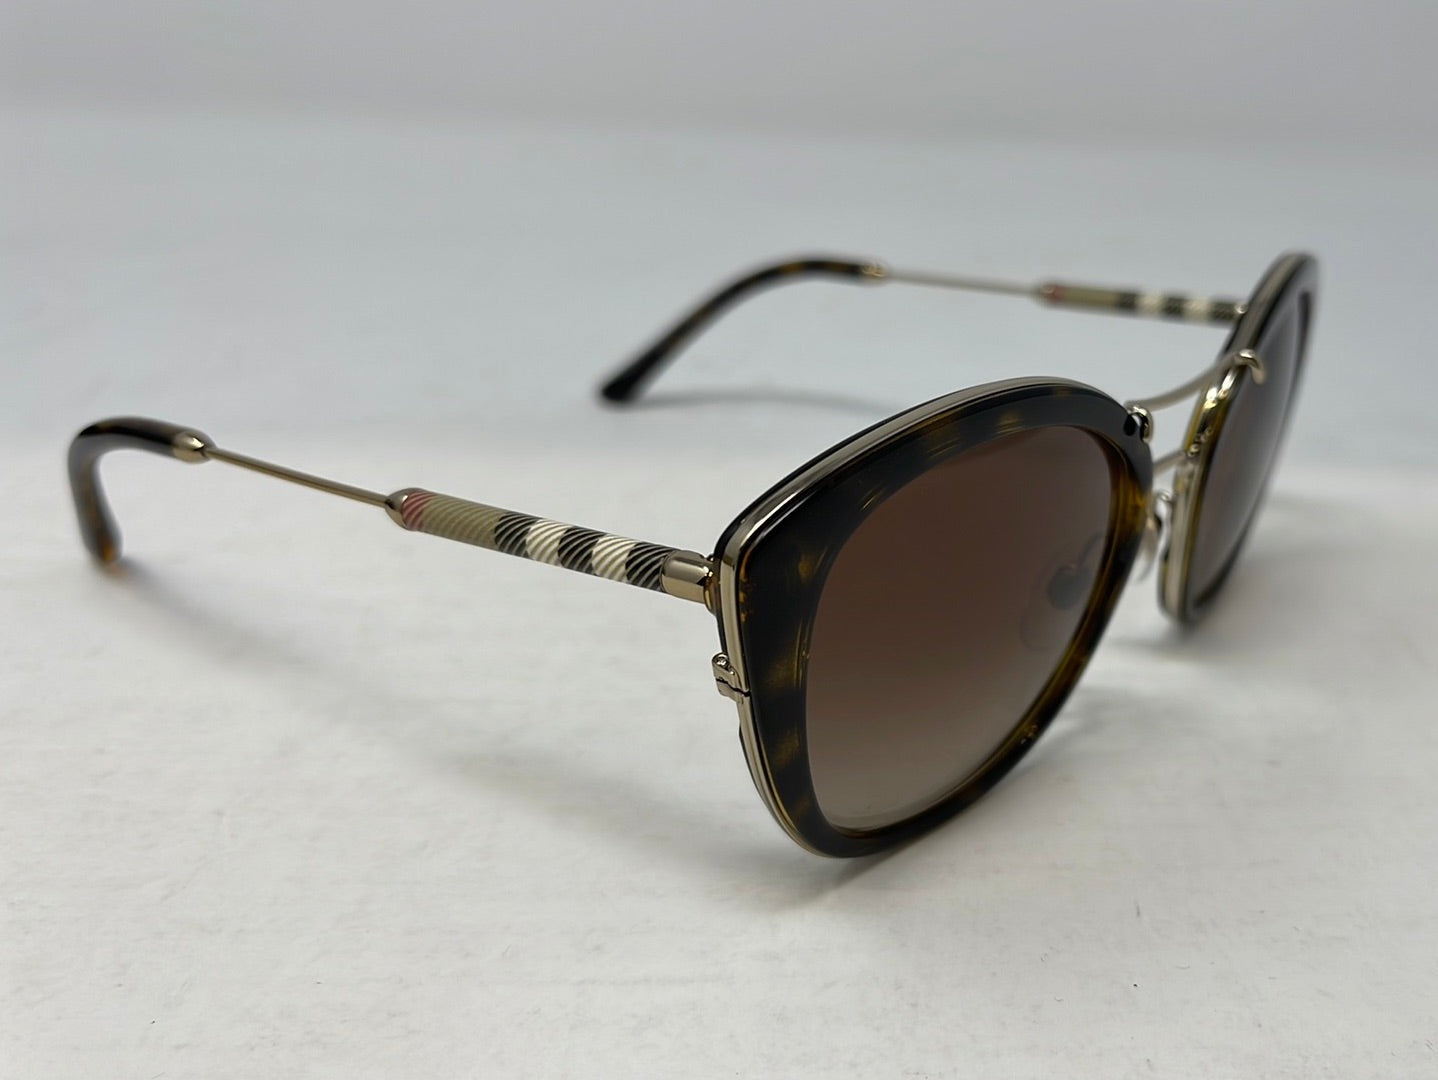 Burberry 53mm Gradient Sunglasses in Dark Havana